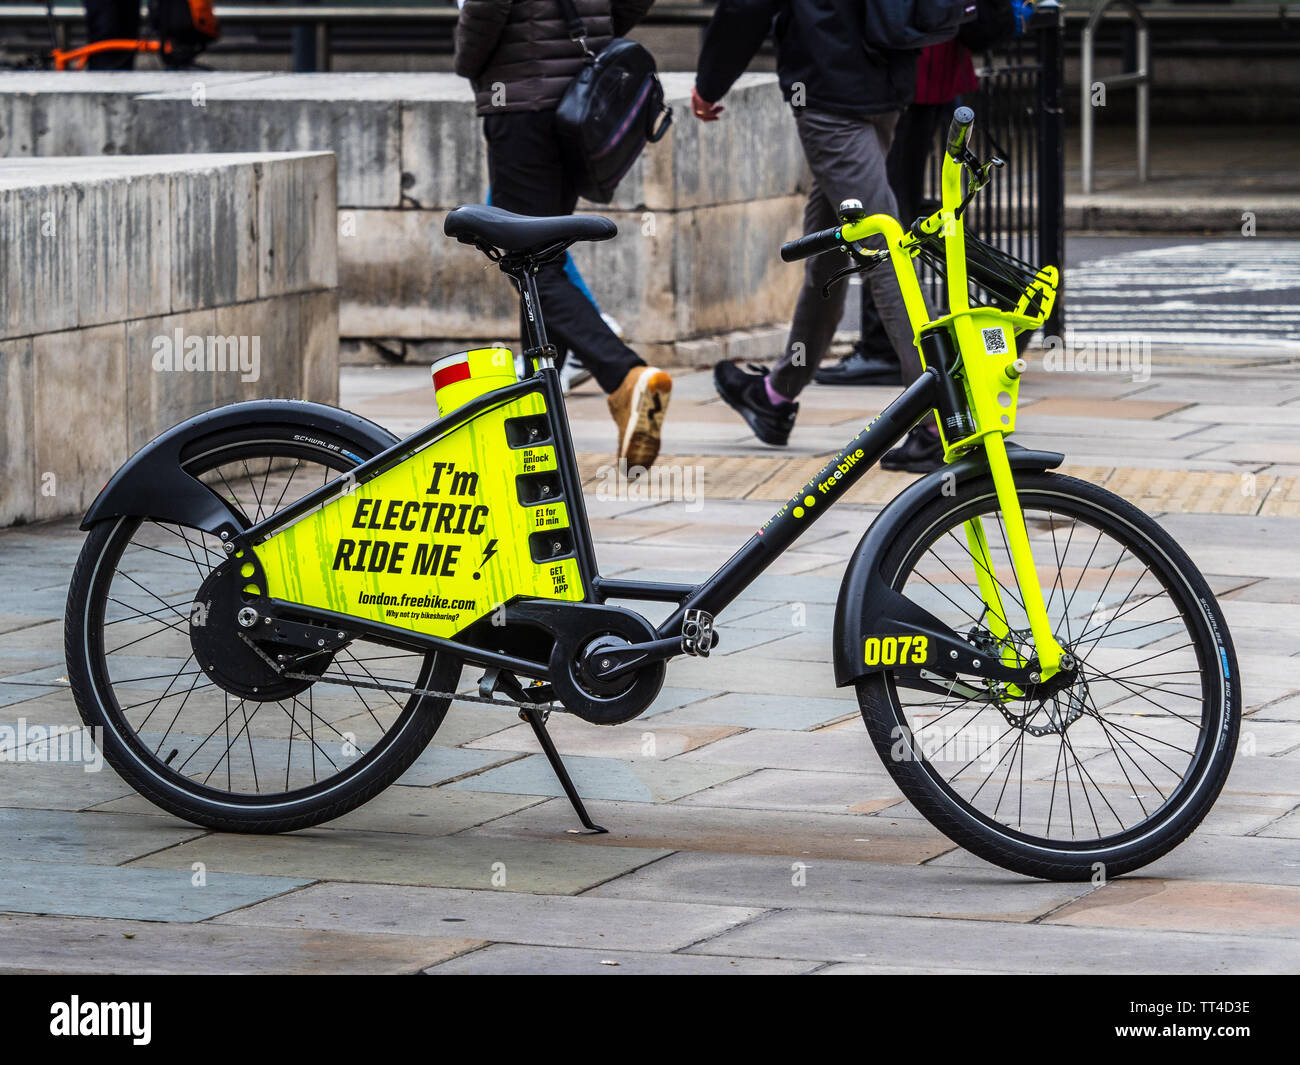 Freebike freebike - Londres vélos location de vélos électriques dans la ville de Londres. Jun 2019 Freebike lancé - 10 premières minutes gratuites, puis 1p par minute. Banque D'Images